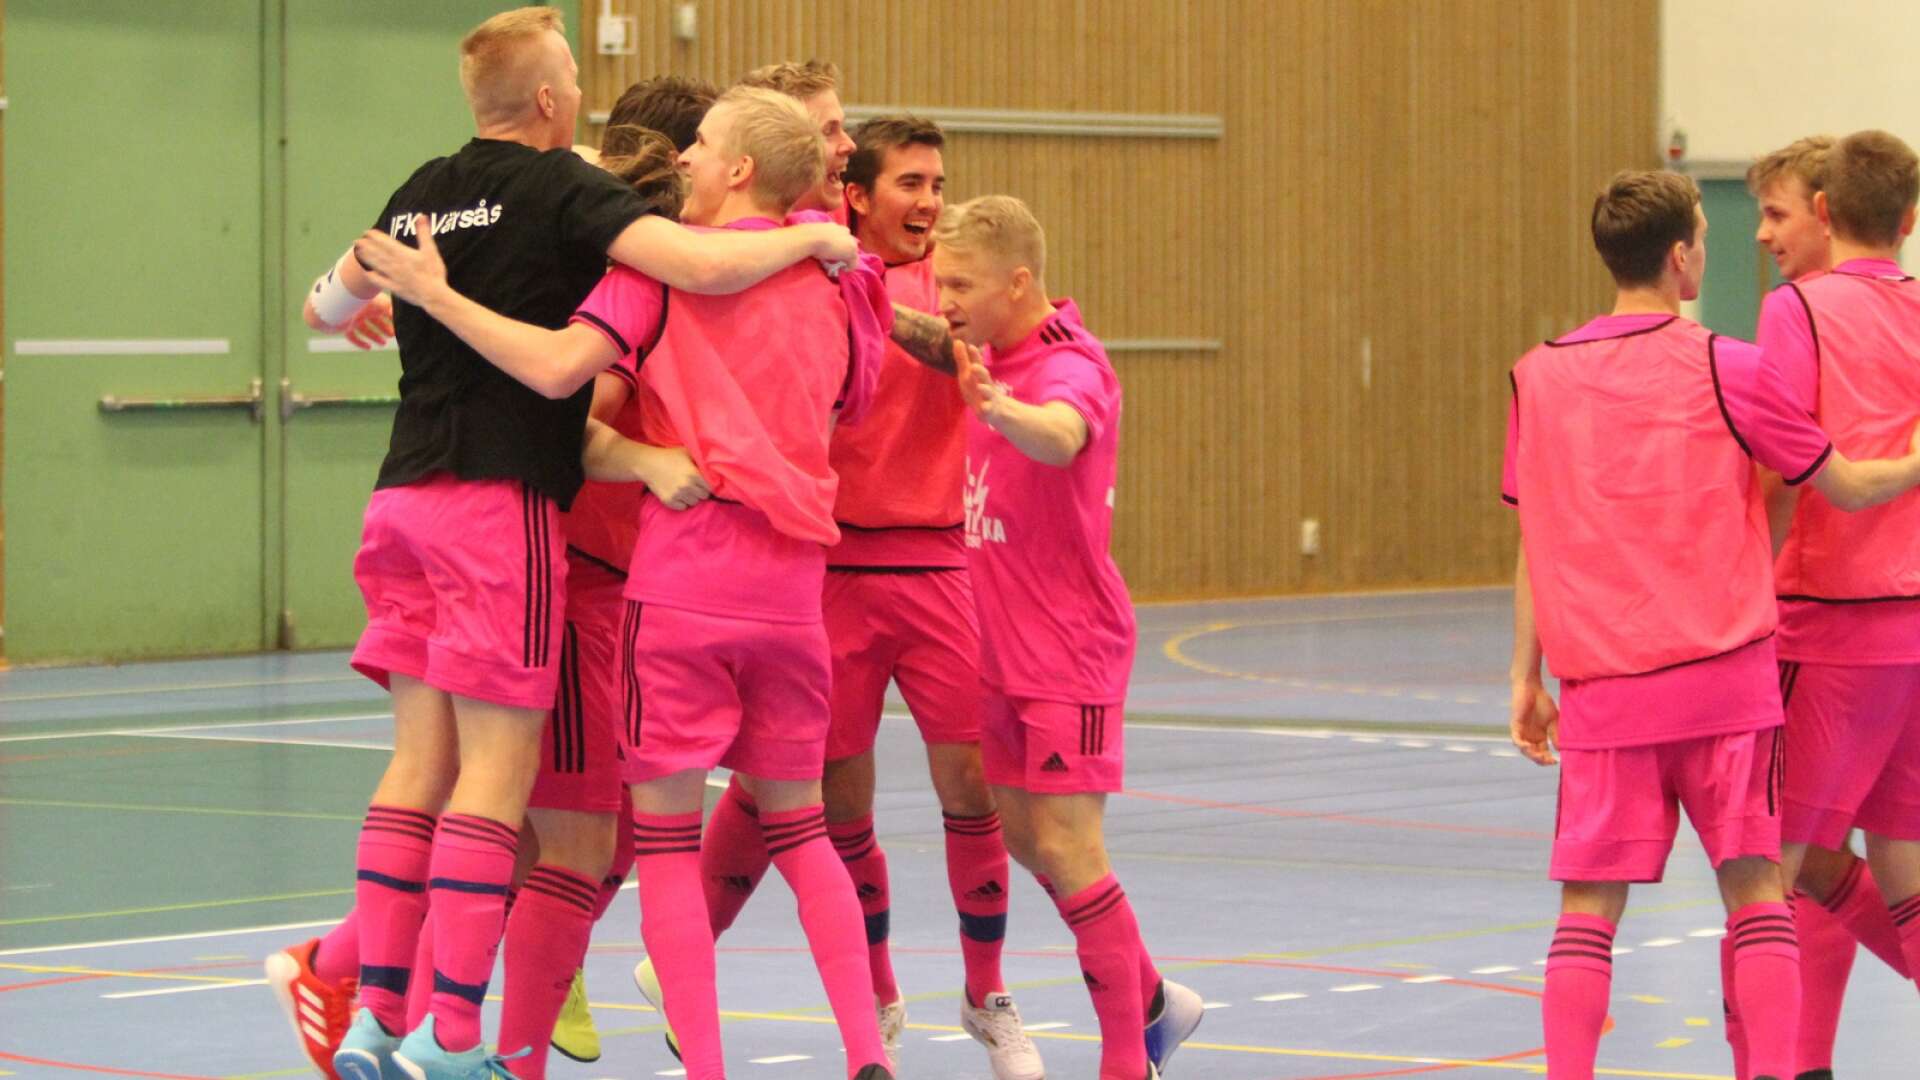 IFK Värsås segerjublar efter segern i Skövde Futsal Cup.